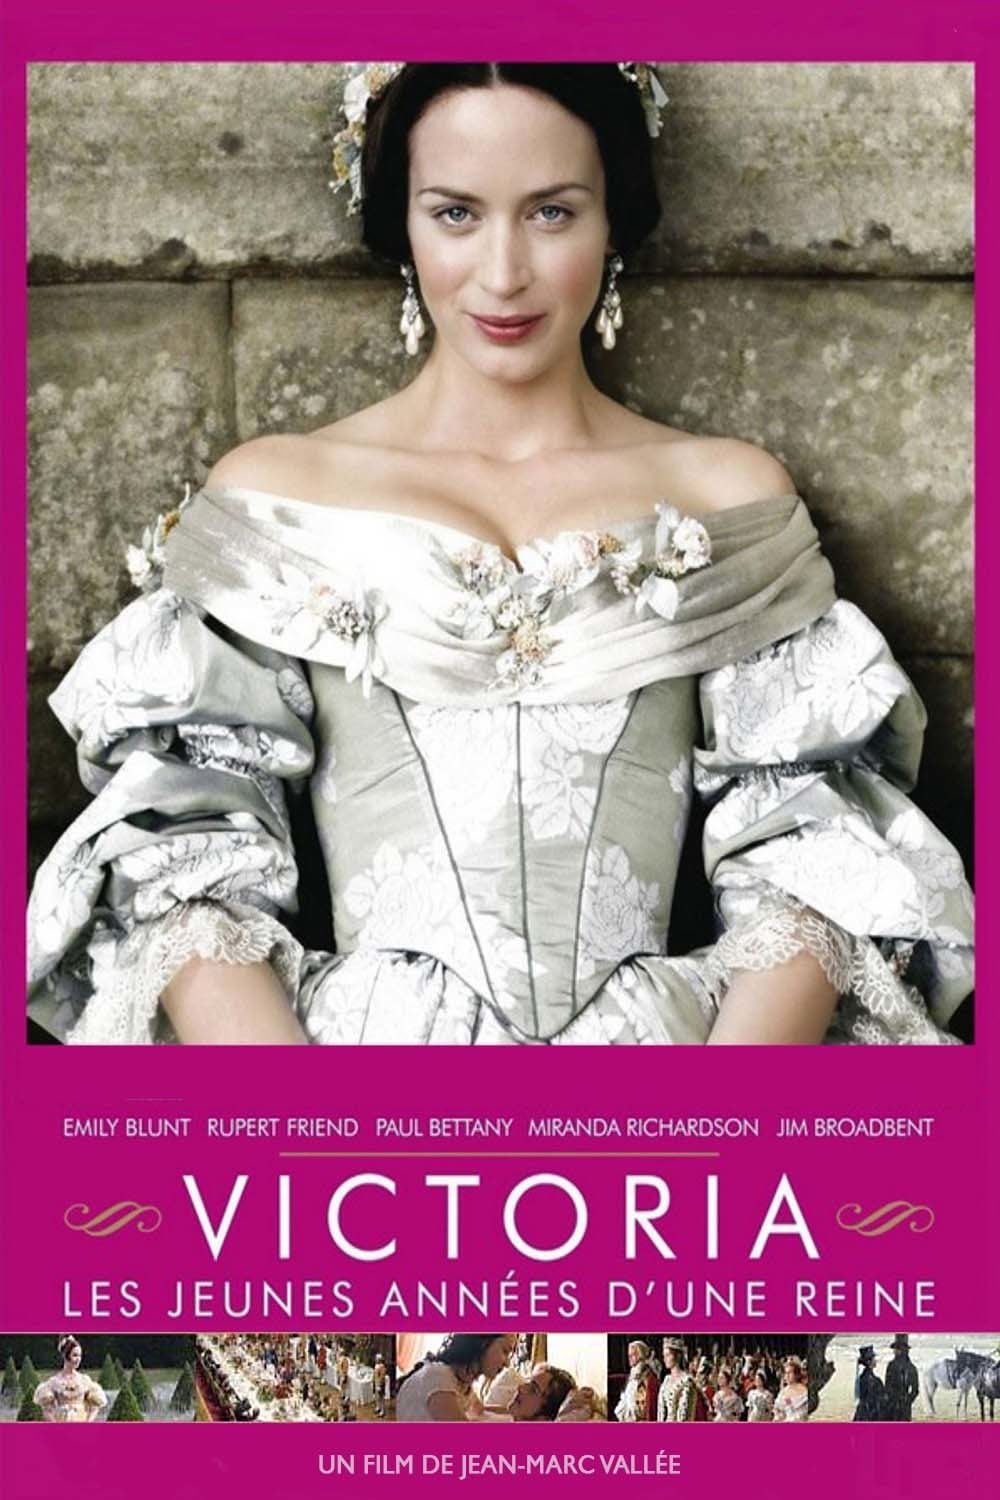 Victoria : Les Jeunes Années d'une reine est-il disponible sur Netflix ou autre ?